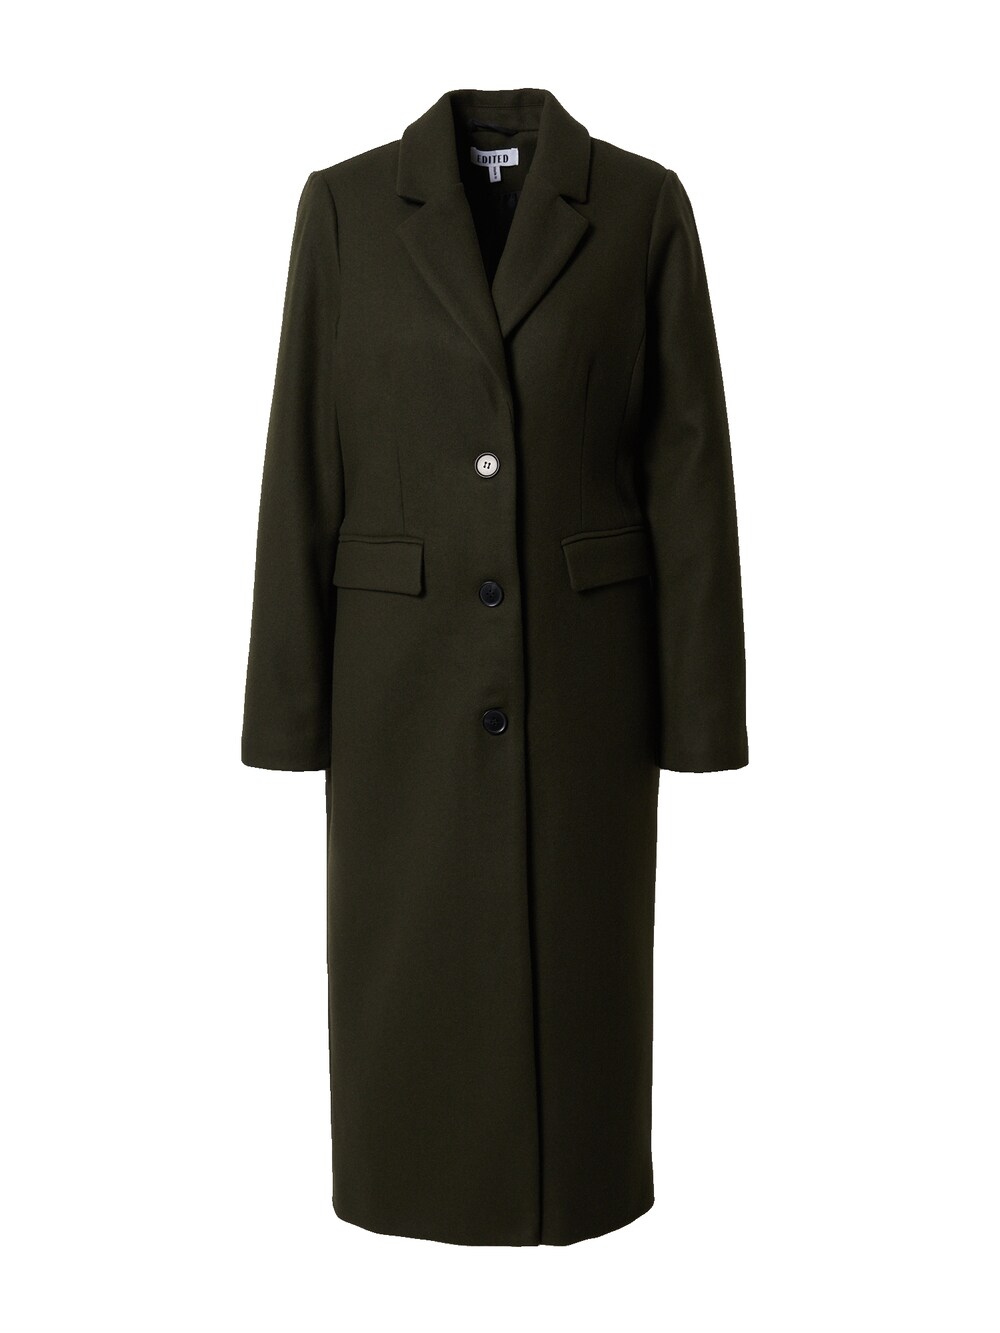 Межсезонное пальто EDITED Airin, темно-зеленый межсезонное пальто edited uli зеленый